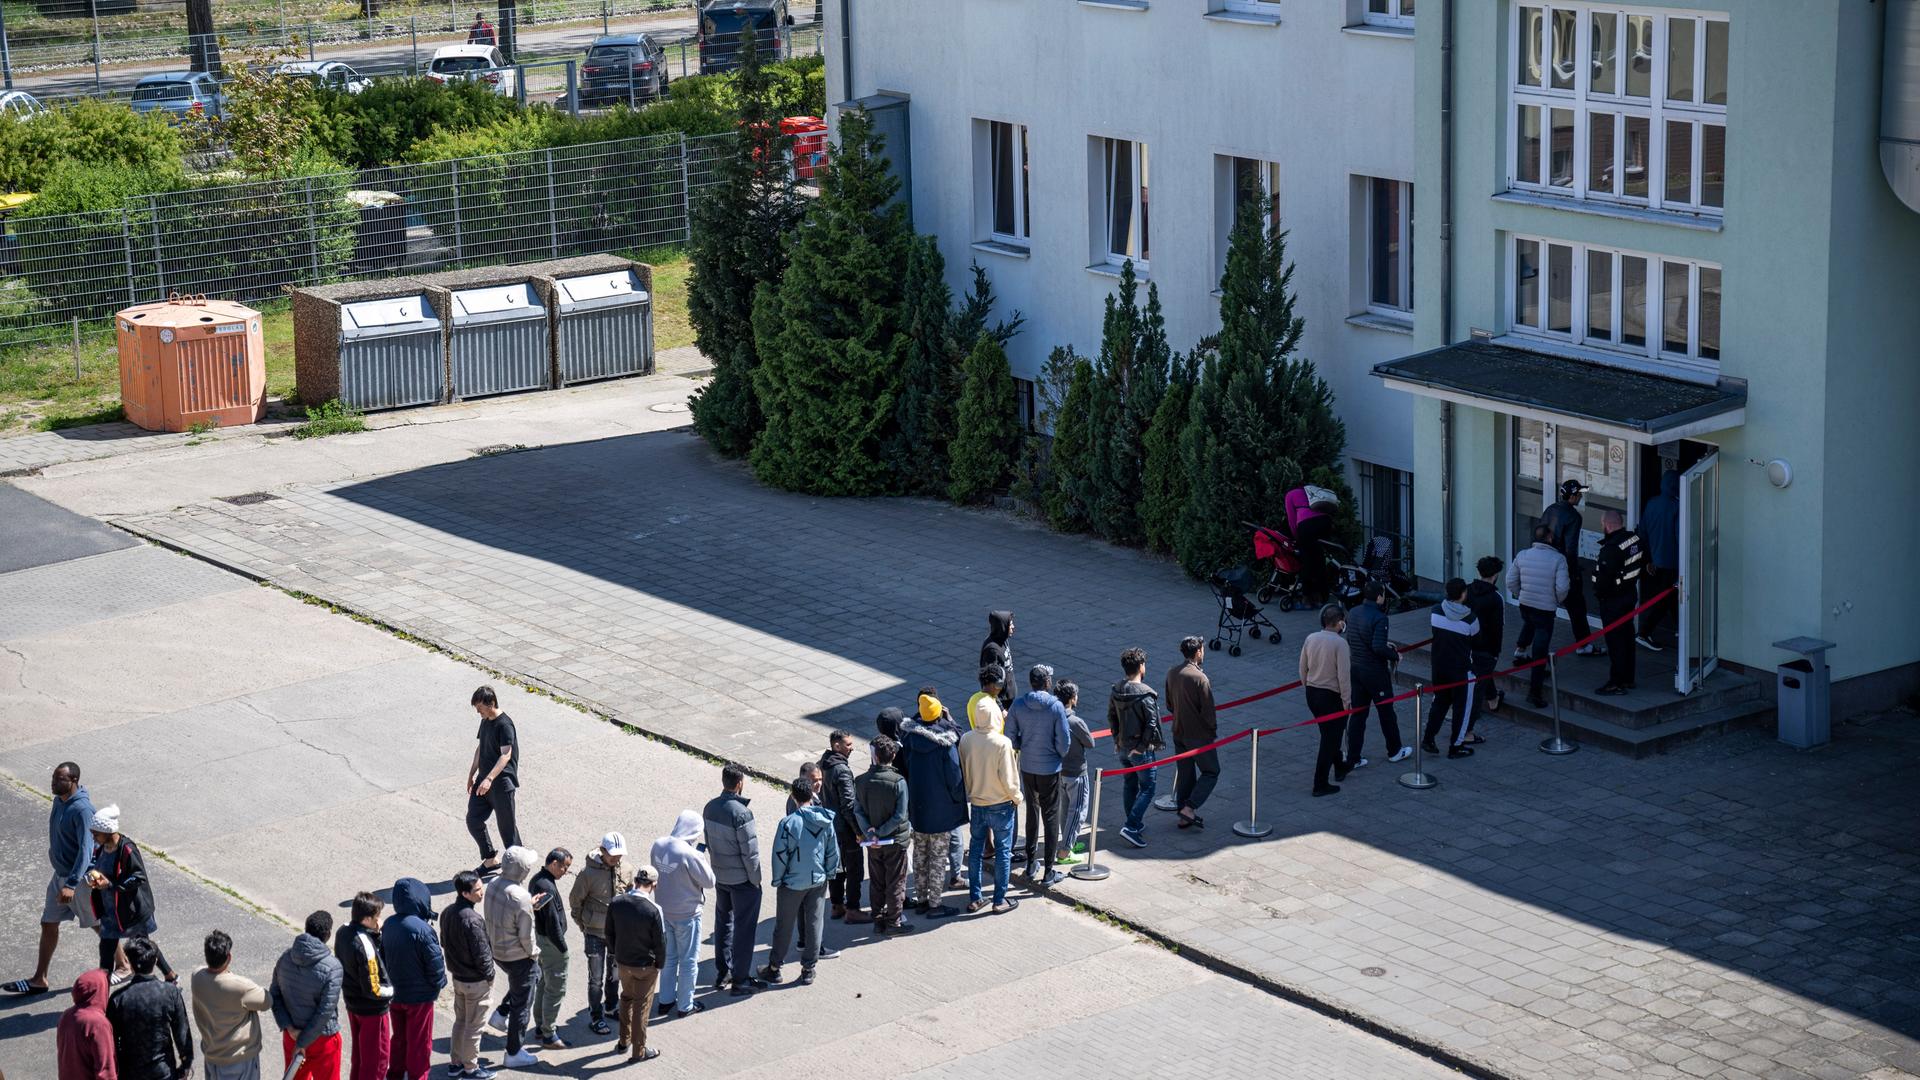 建物の前の庭に人々が長い列を作り、難民施設への入場を待っている。